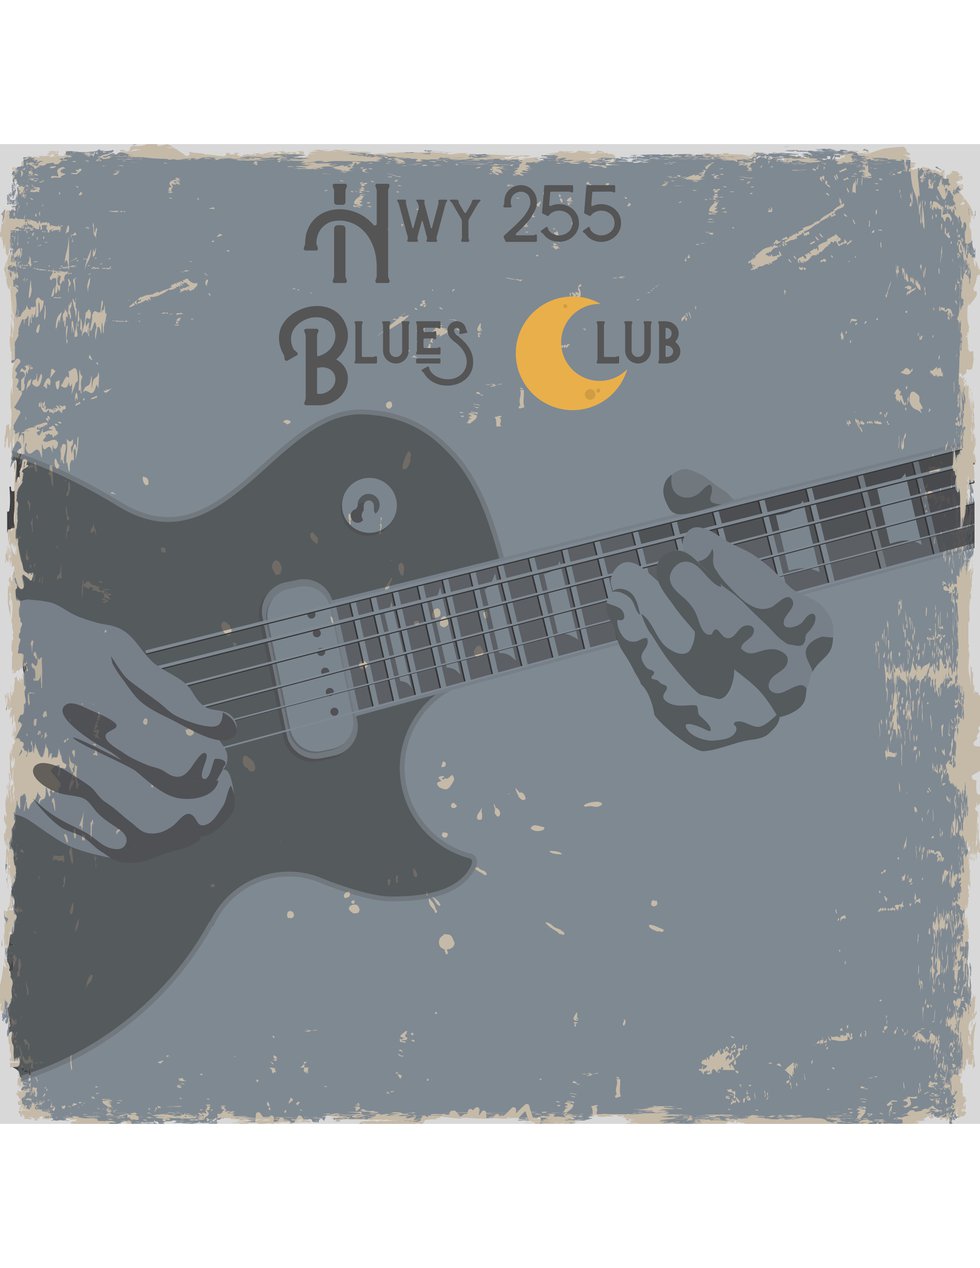 Hwy 255 Blues Club (JPEG).jpg